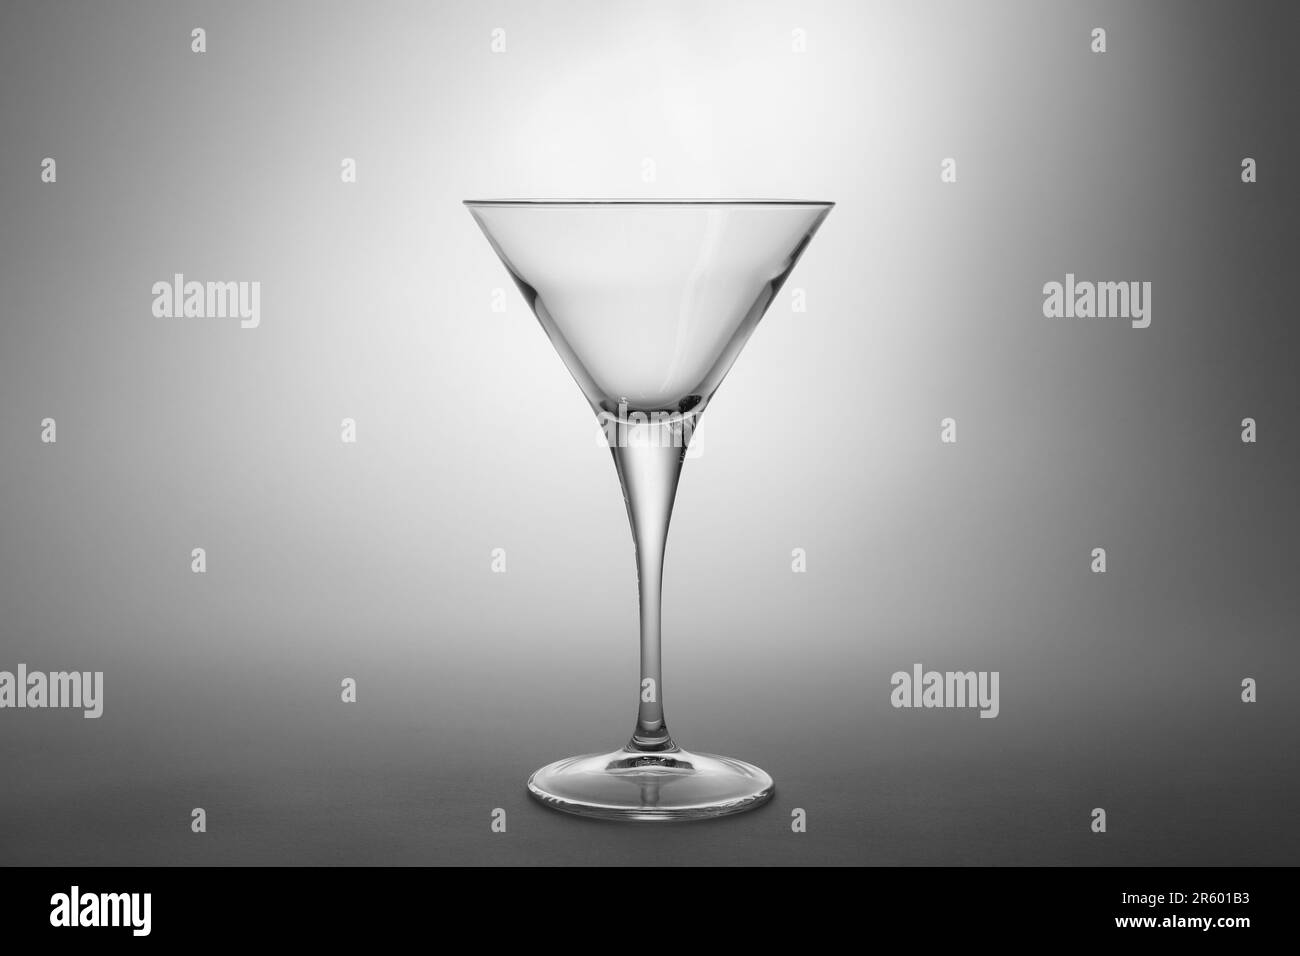 Elegante bicchiere martini vuoto su sfondo grigio Foto Stock